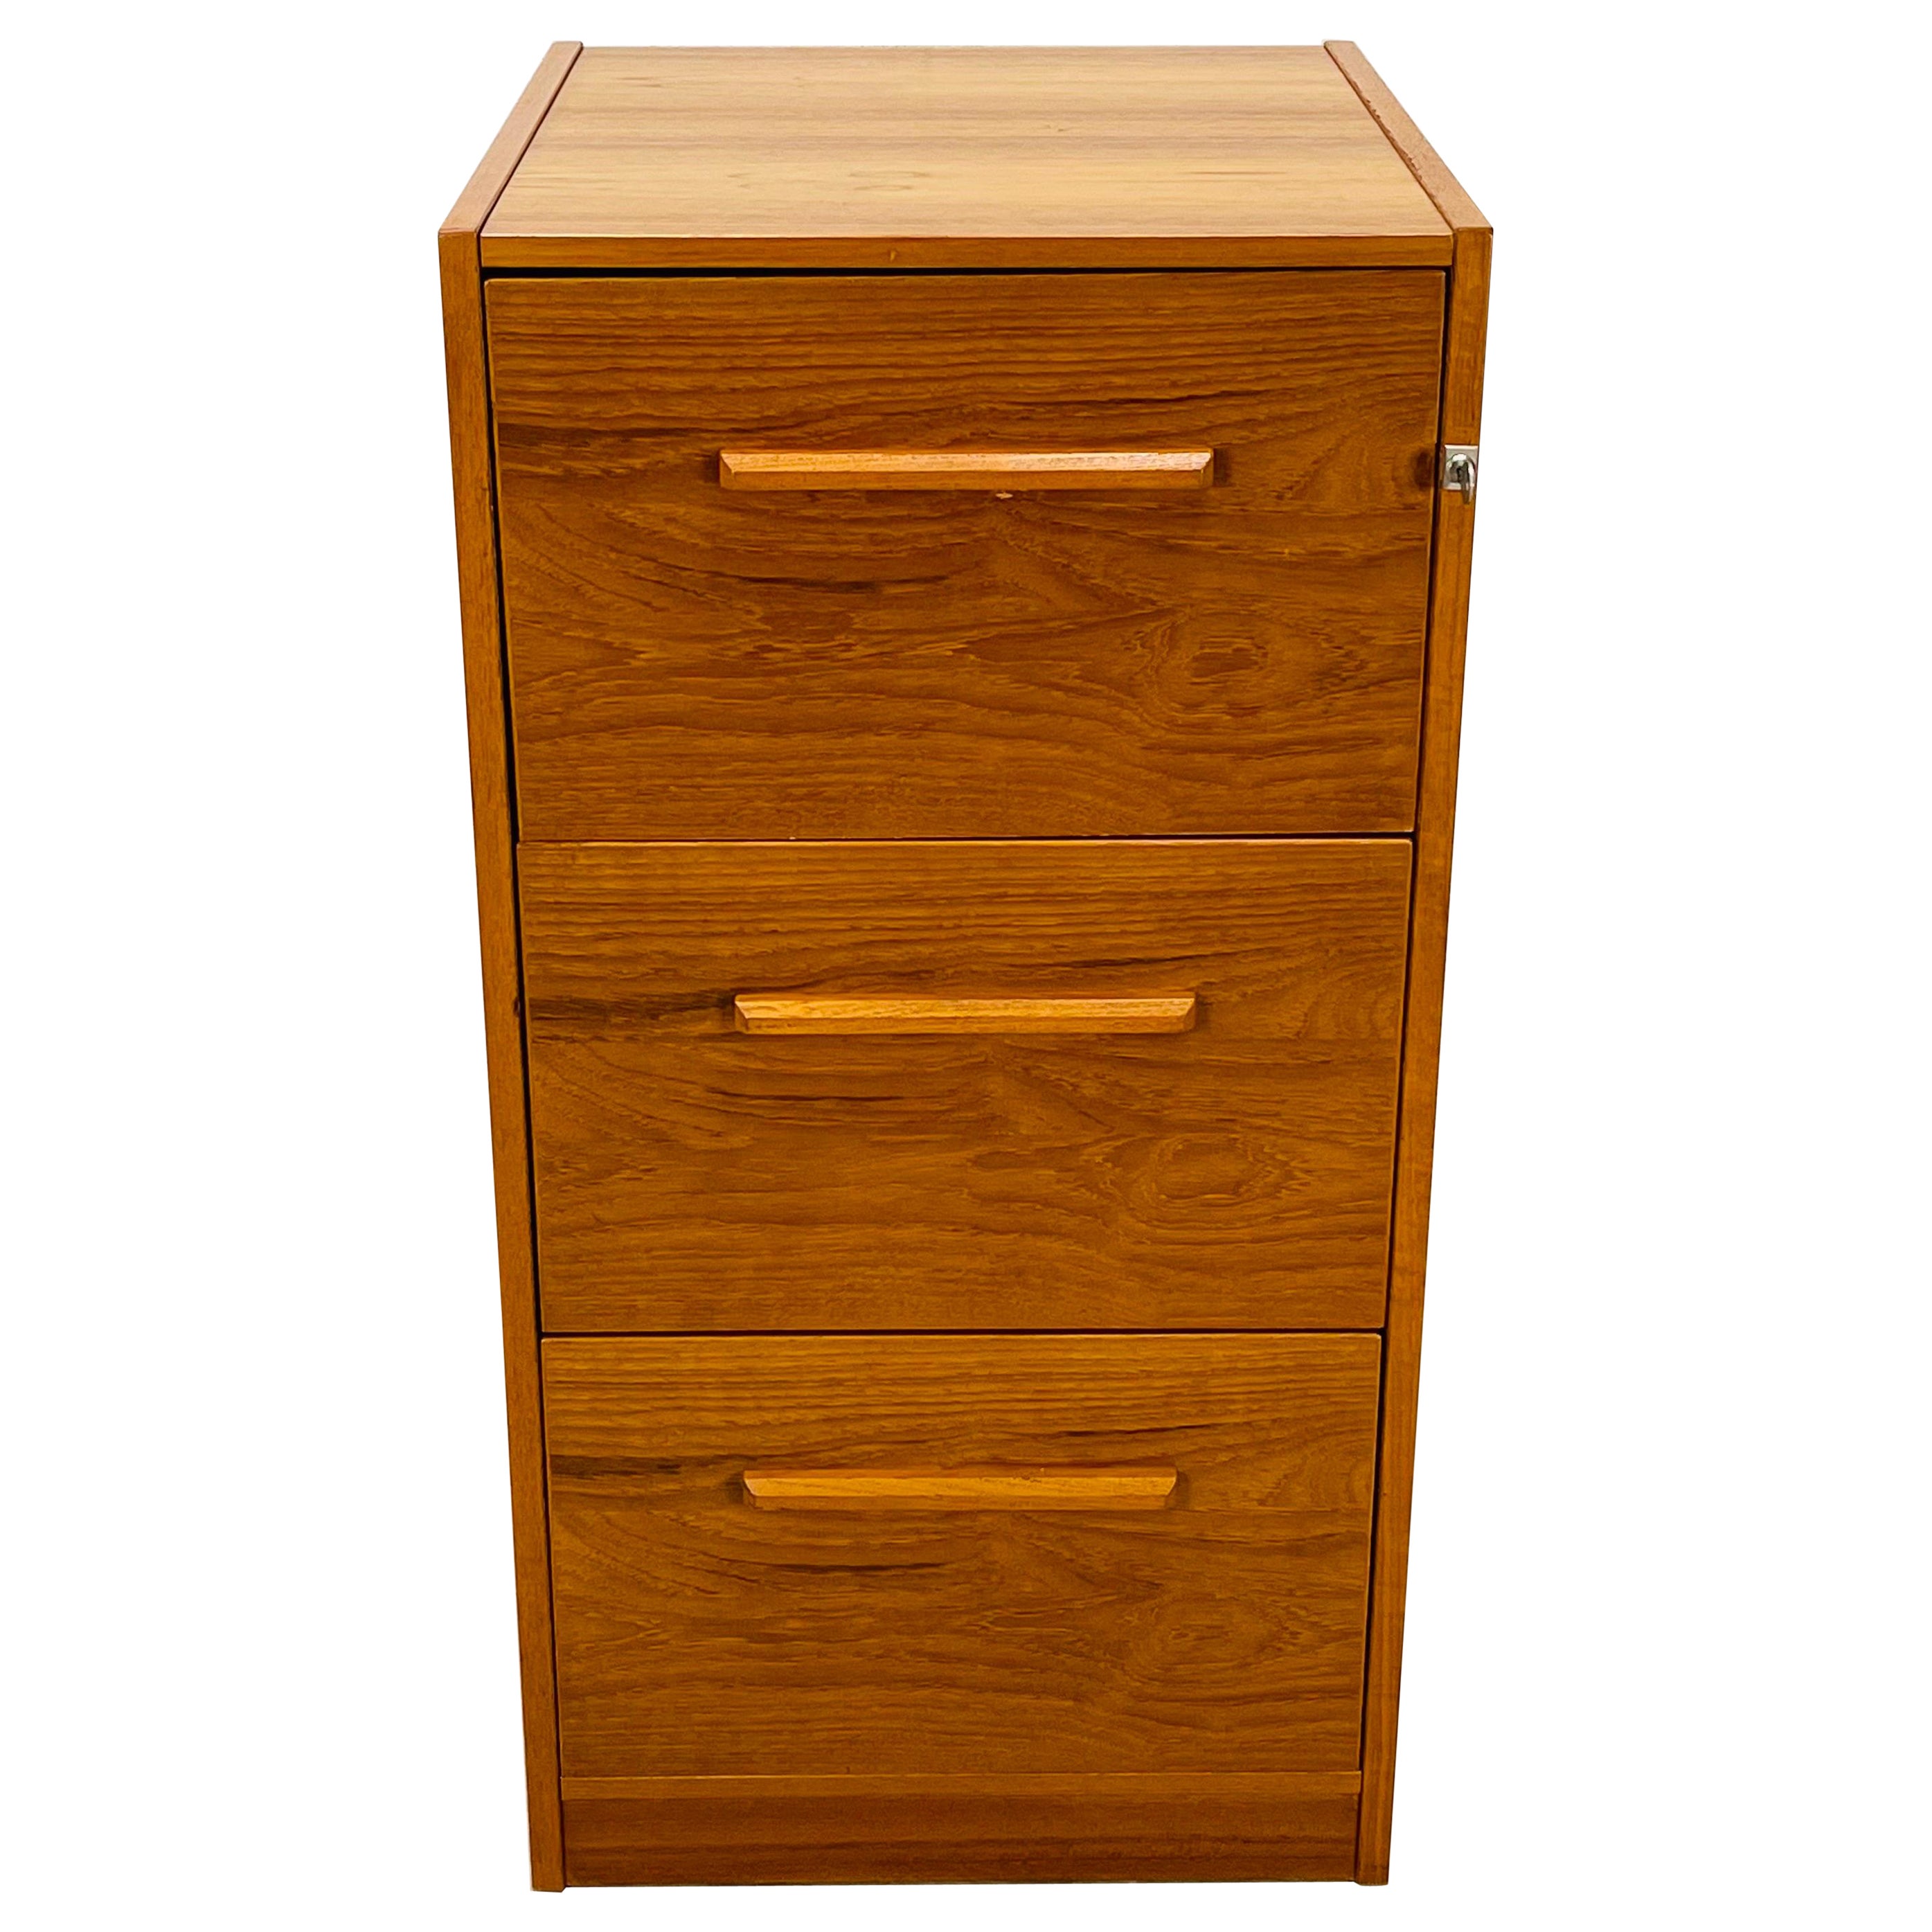 1970s Teak Wood File Cabinet For Sale